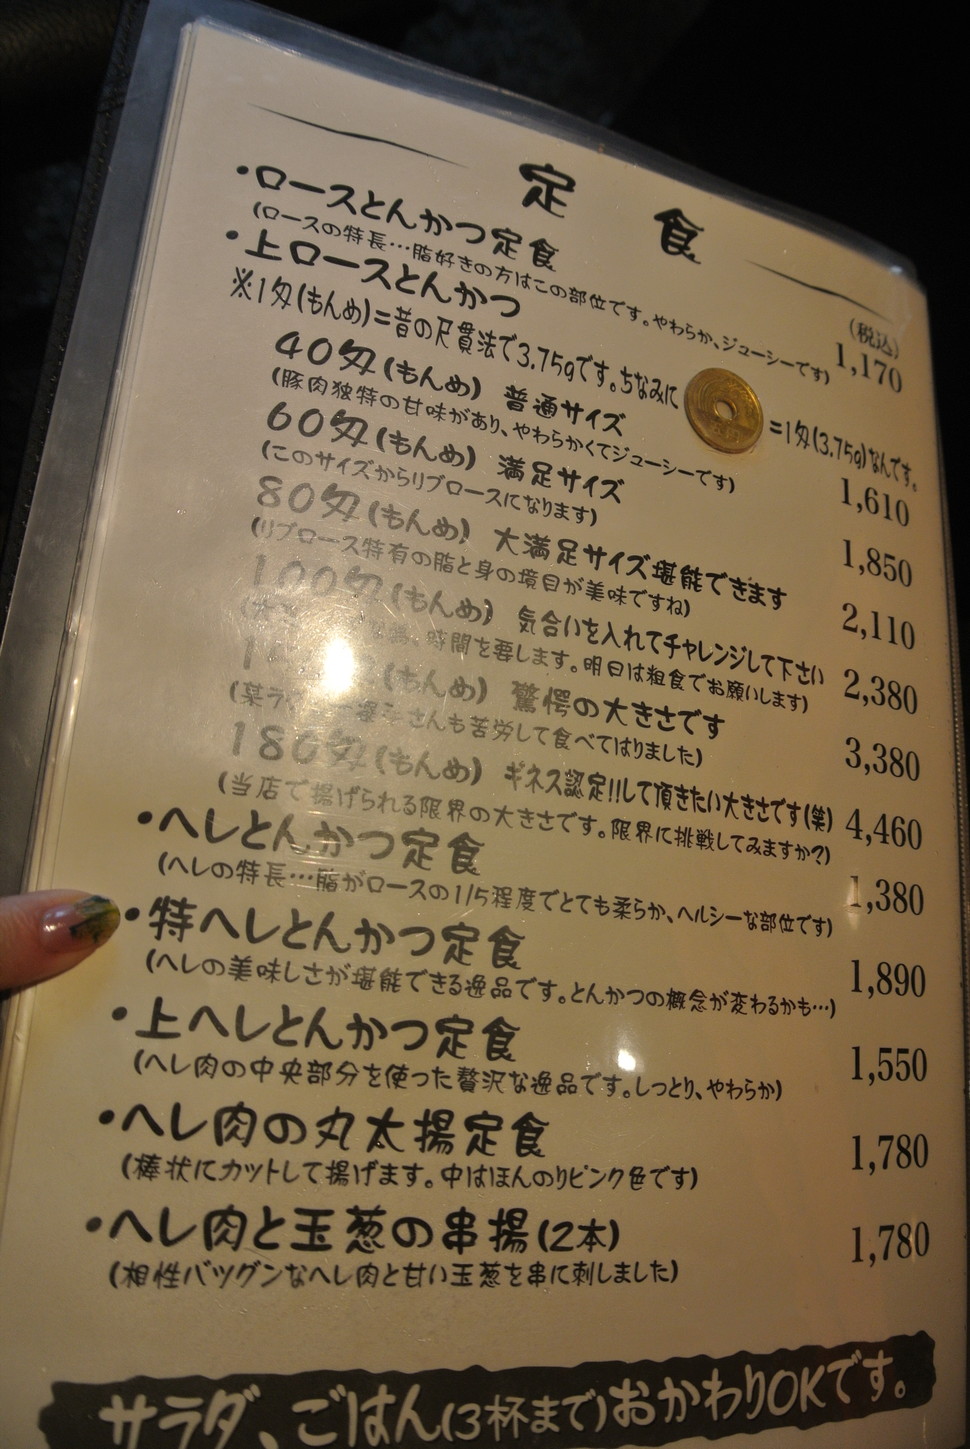 日本一のトンカツ 大阪のトンカツ店 マンジェ の行列徹底レポート Playlife プレイライフ